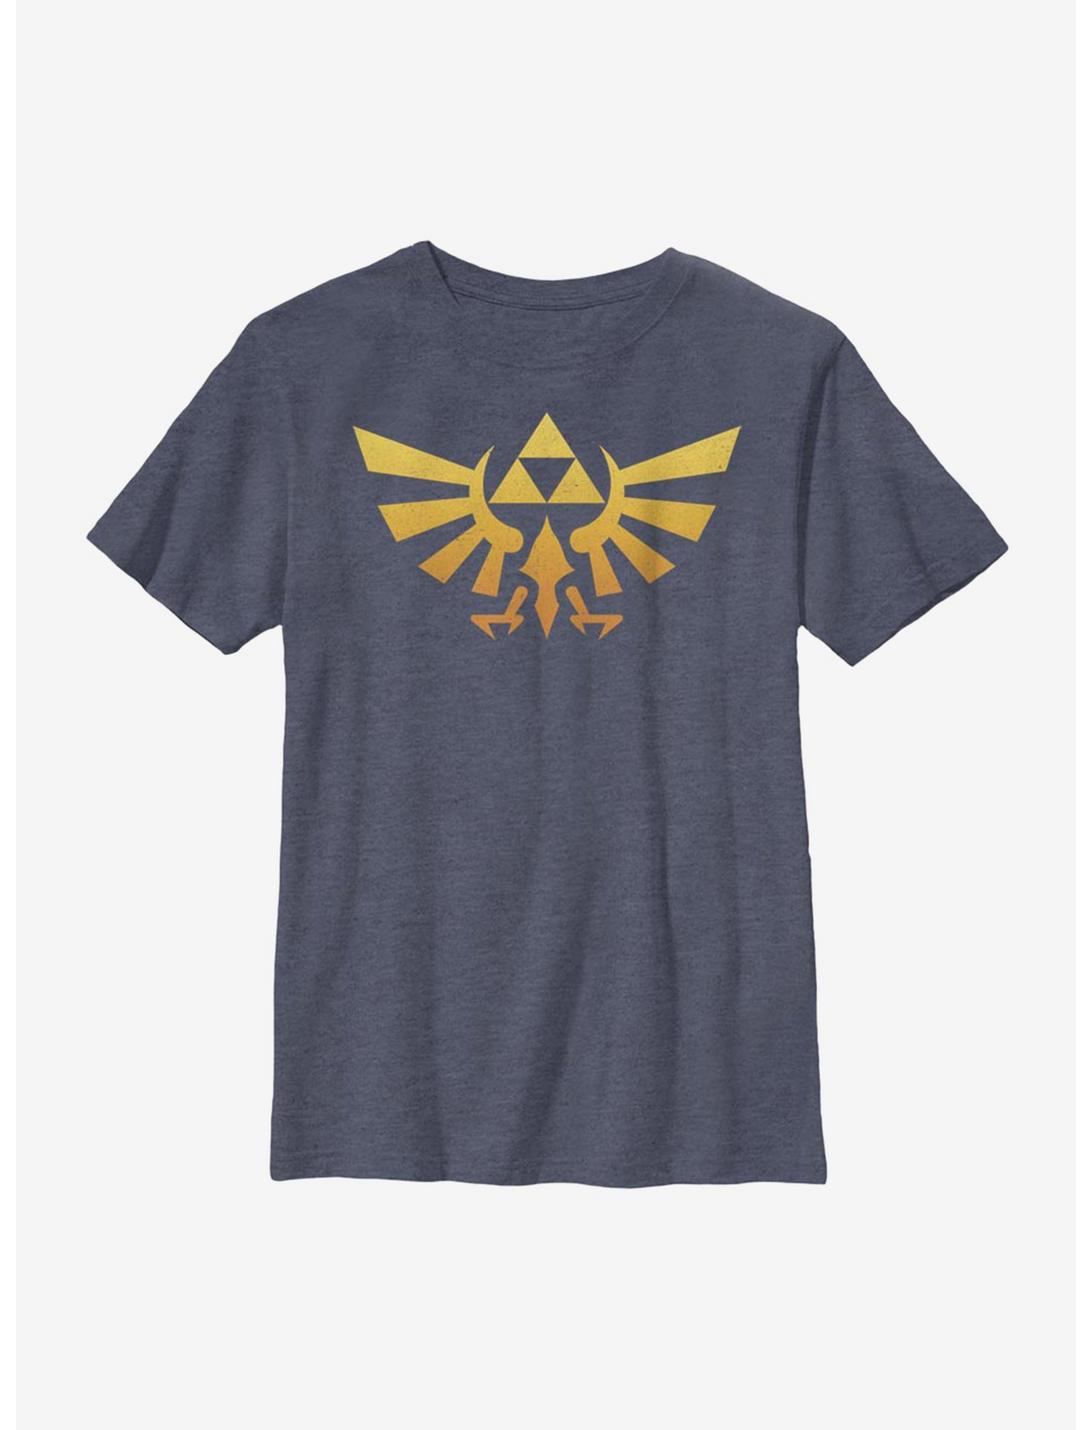 Nintendo The Legend Of Zelda Gradientforce Youth T-Shirt, NAVY HTR, hi-res